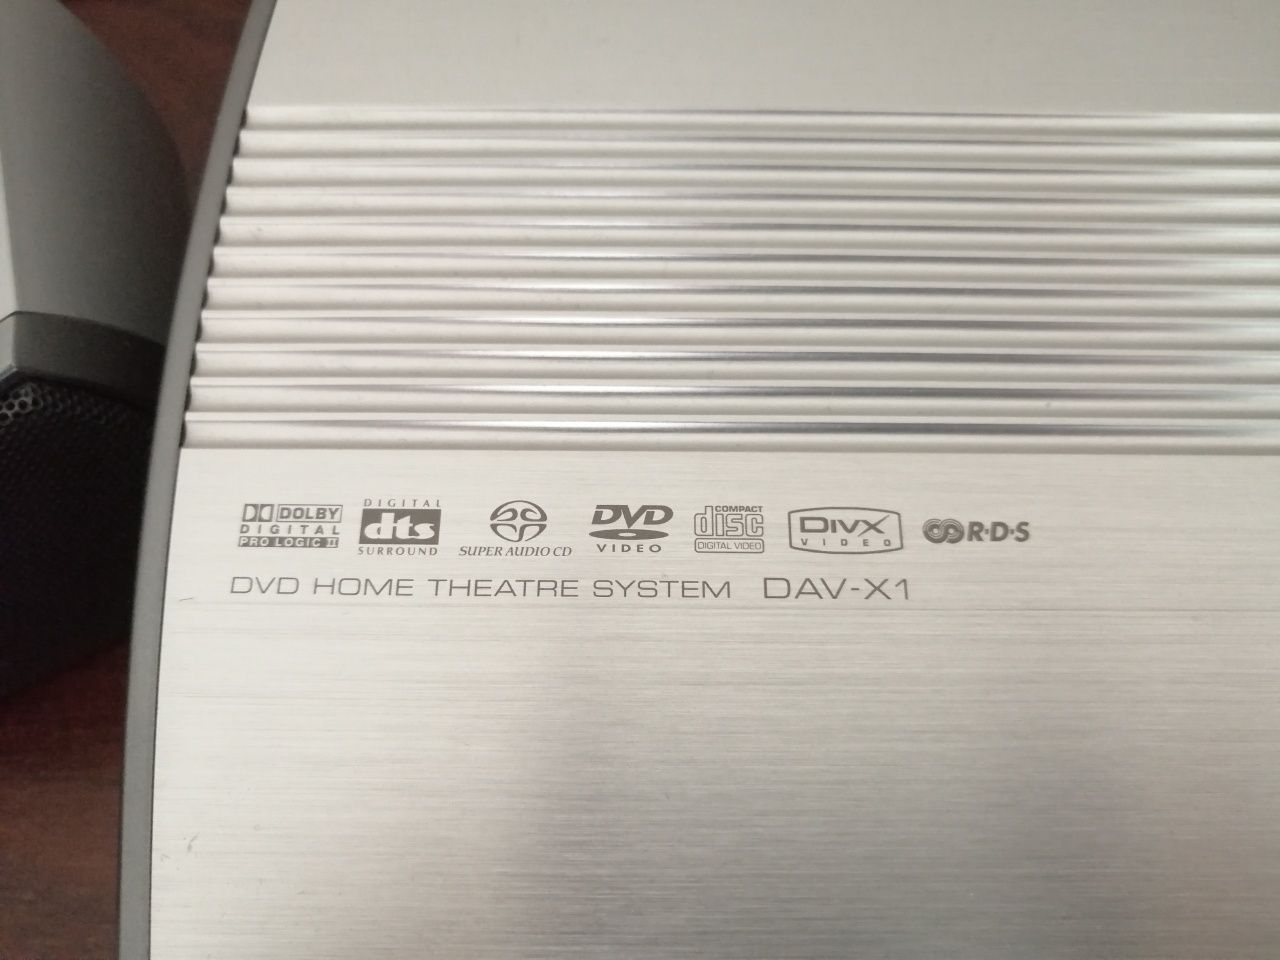 Sistema de som Sony DAV-X1 DVD Home Theatre System - redução de 65%!